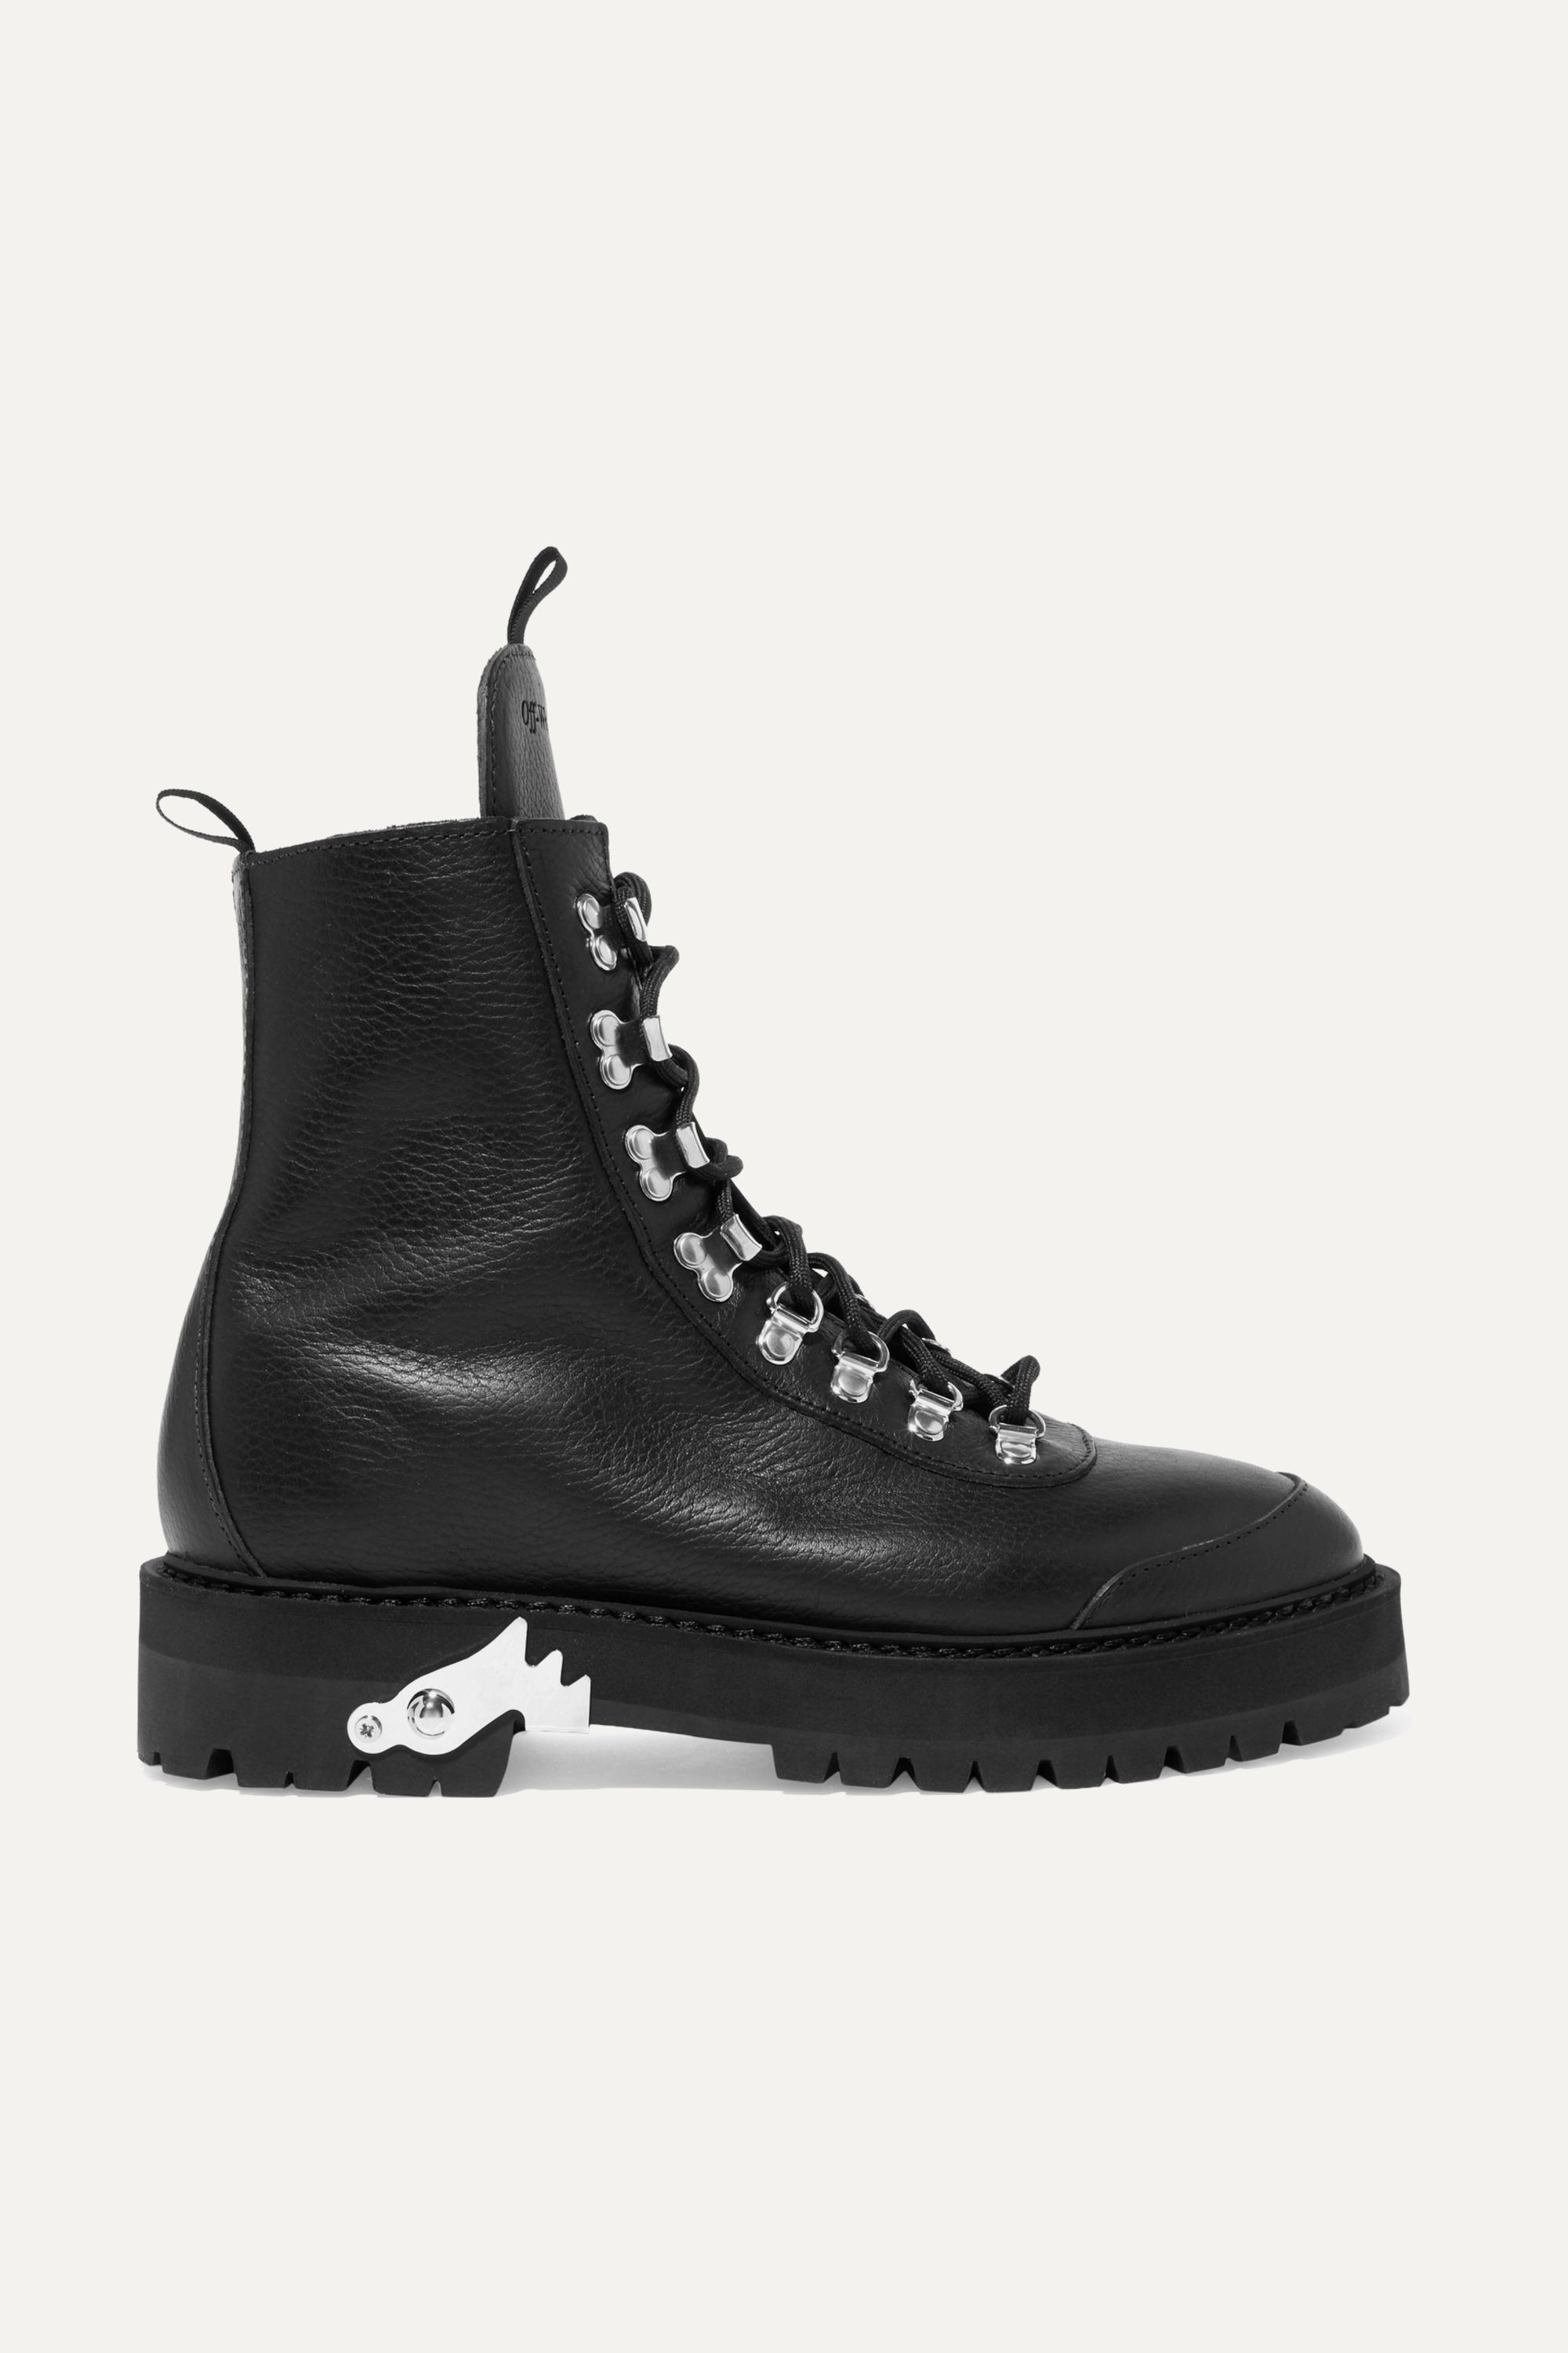 black fashion hiking boots